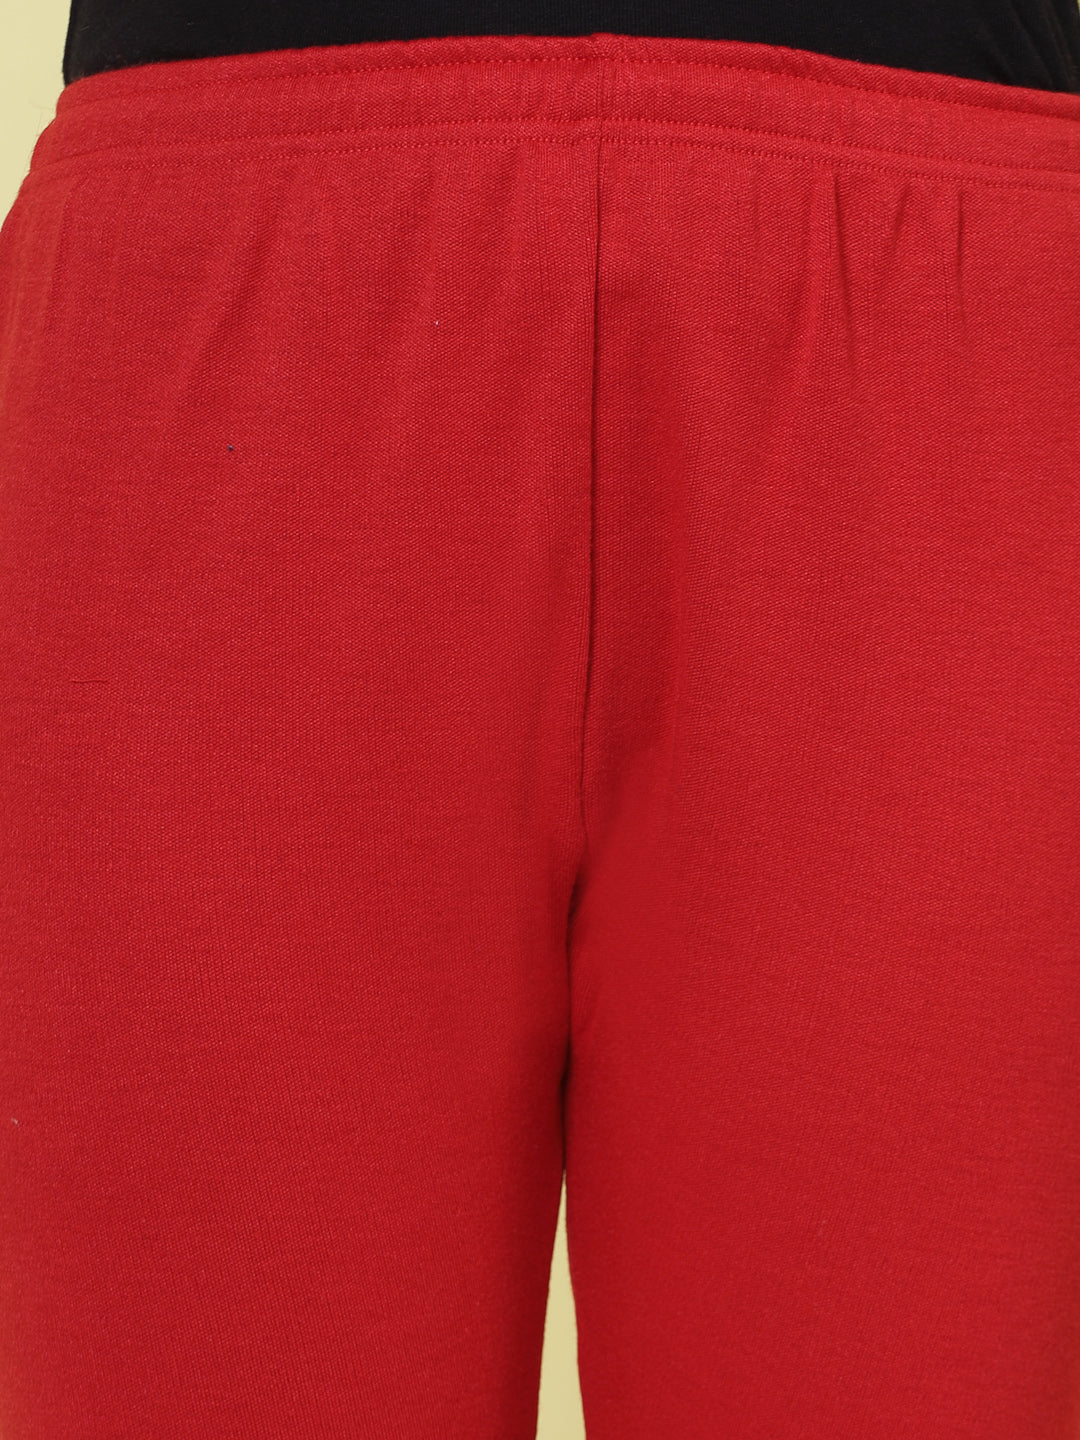 Grey & Red Solid Woollen Leggings (Pack of 2)